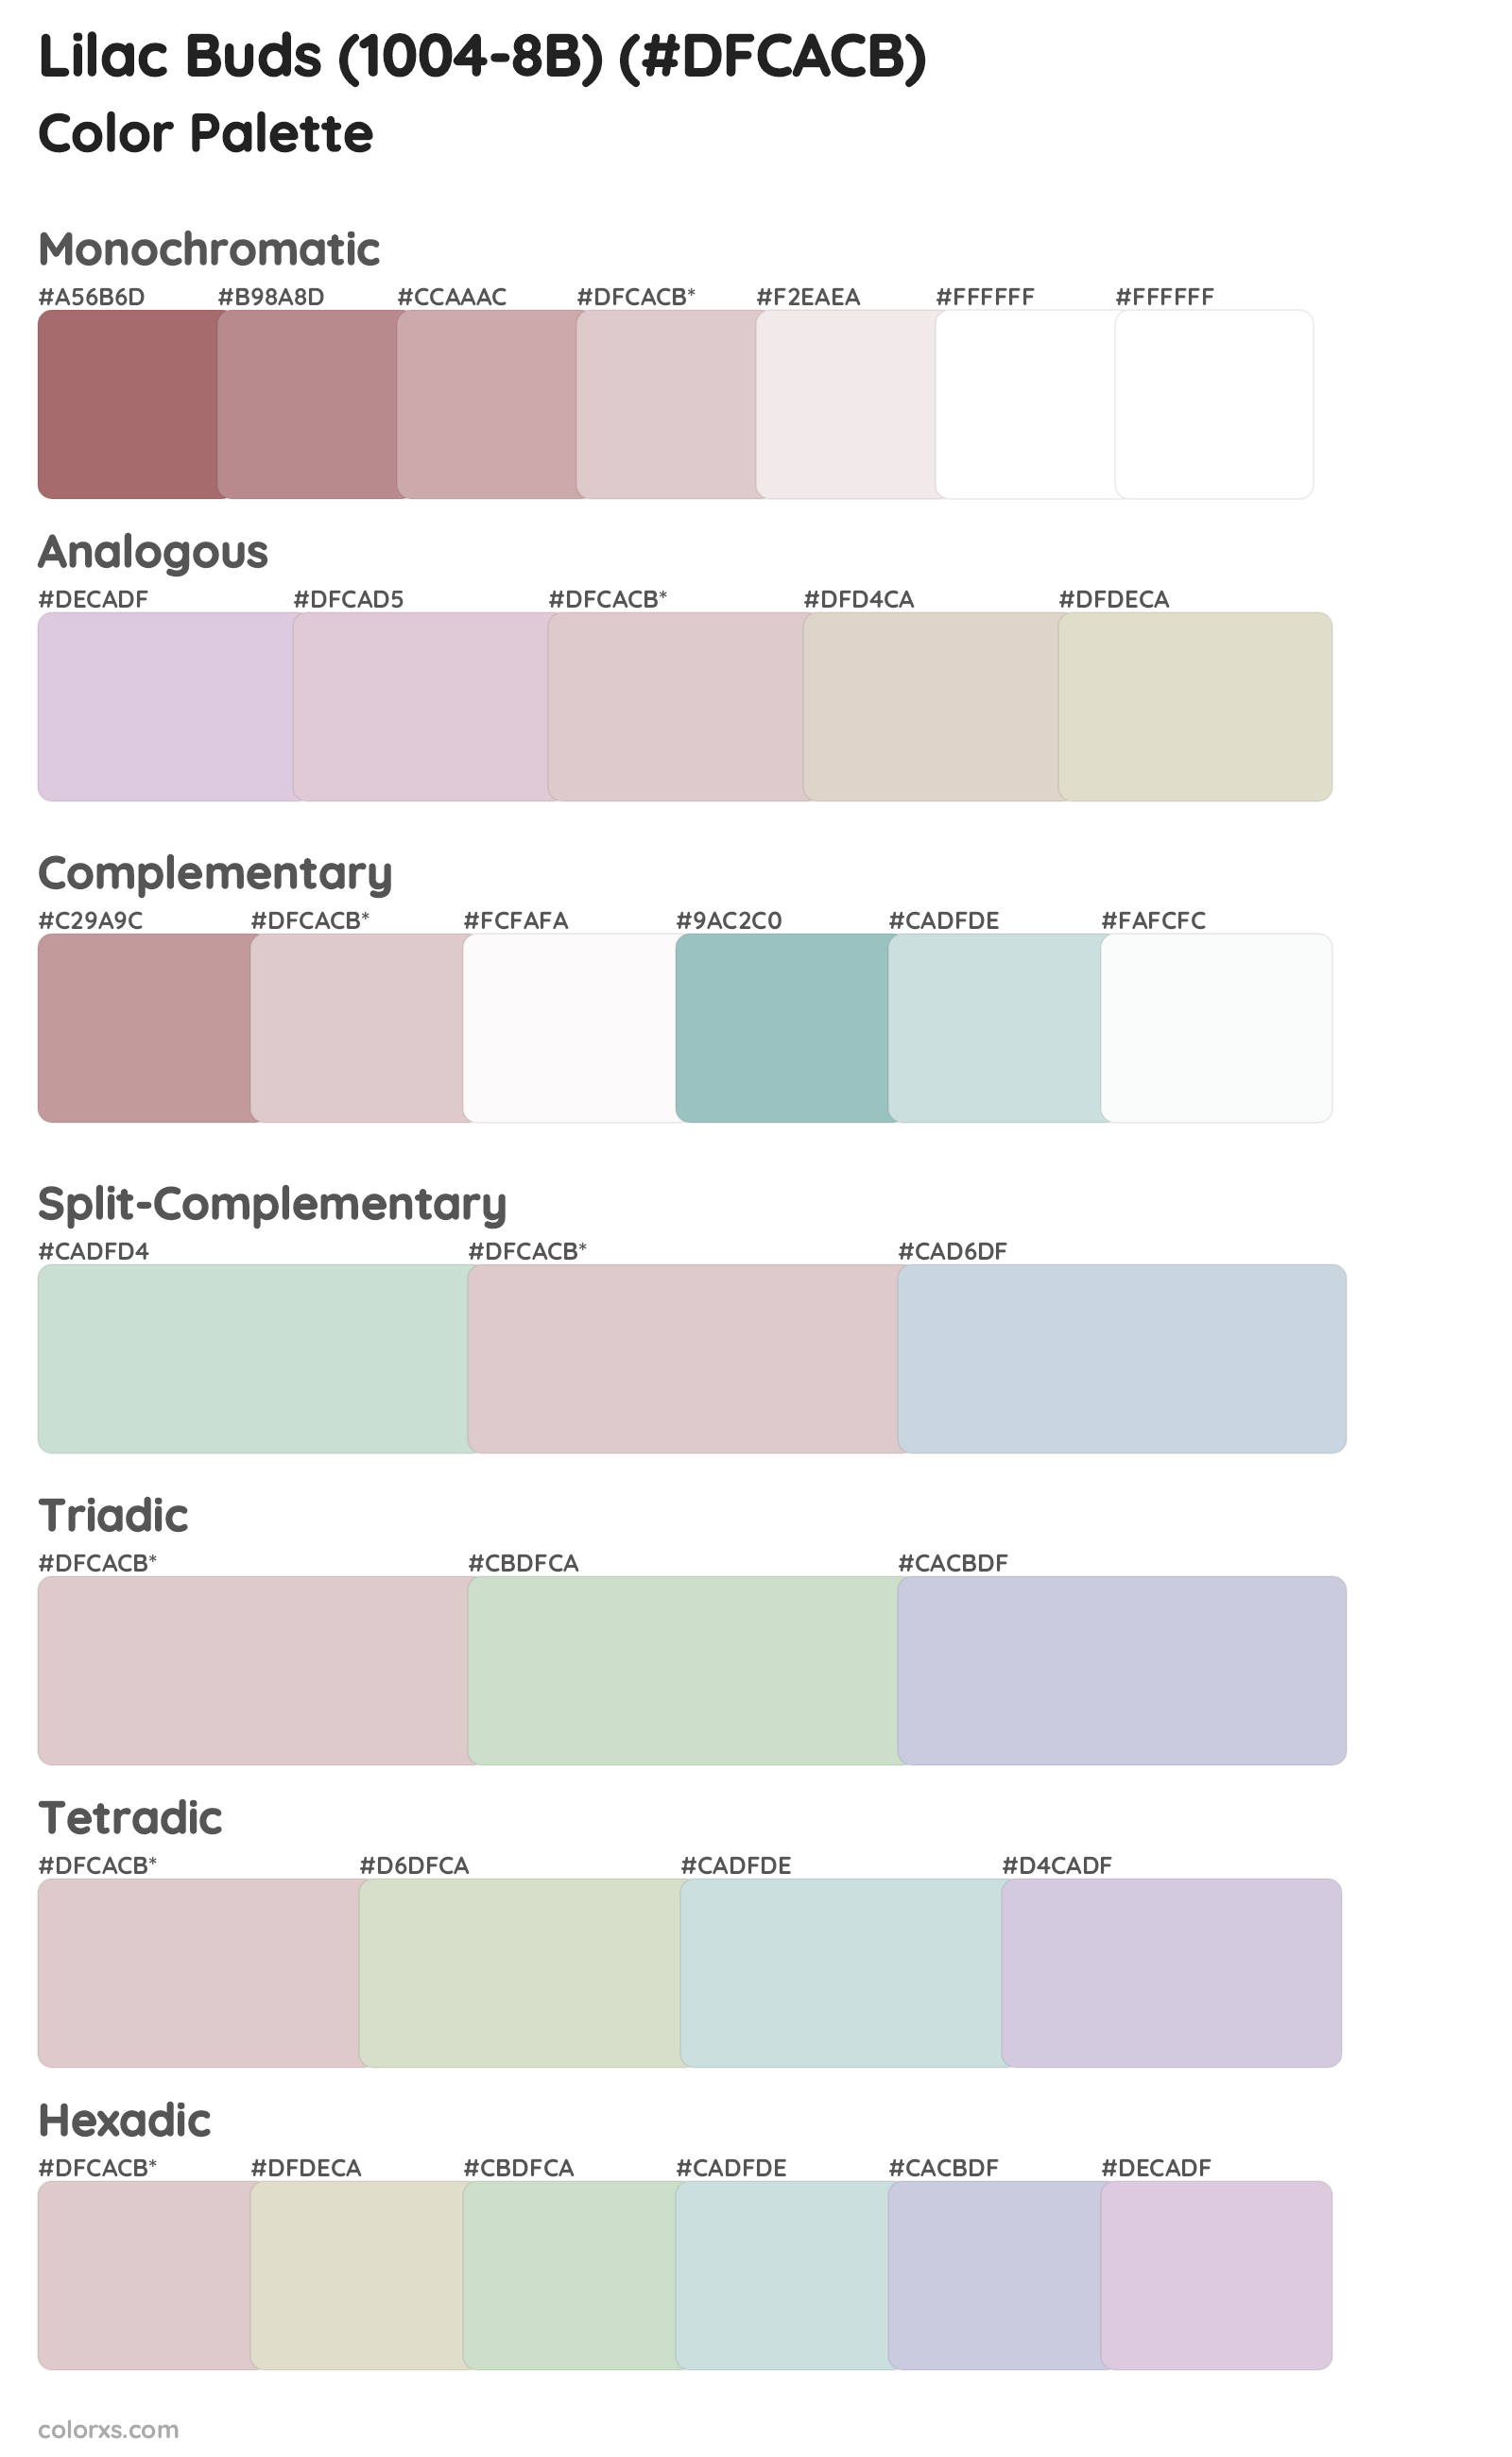 Lilac Buds (1004-8B) Color Scheme Palettes